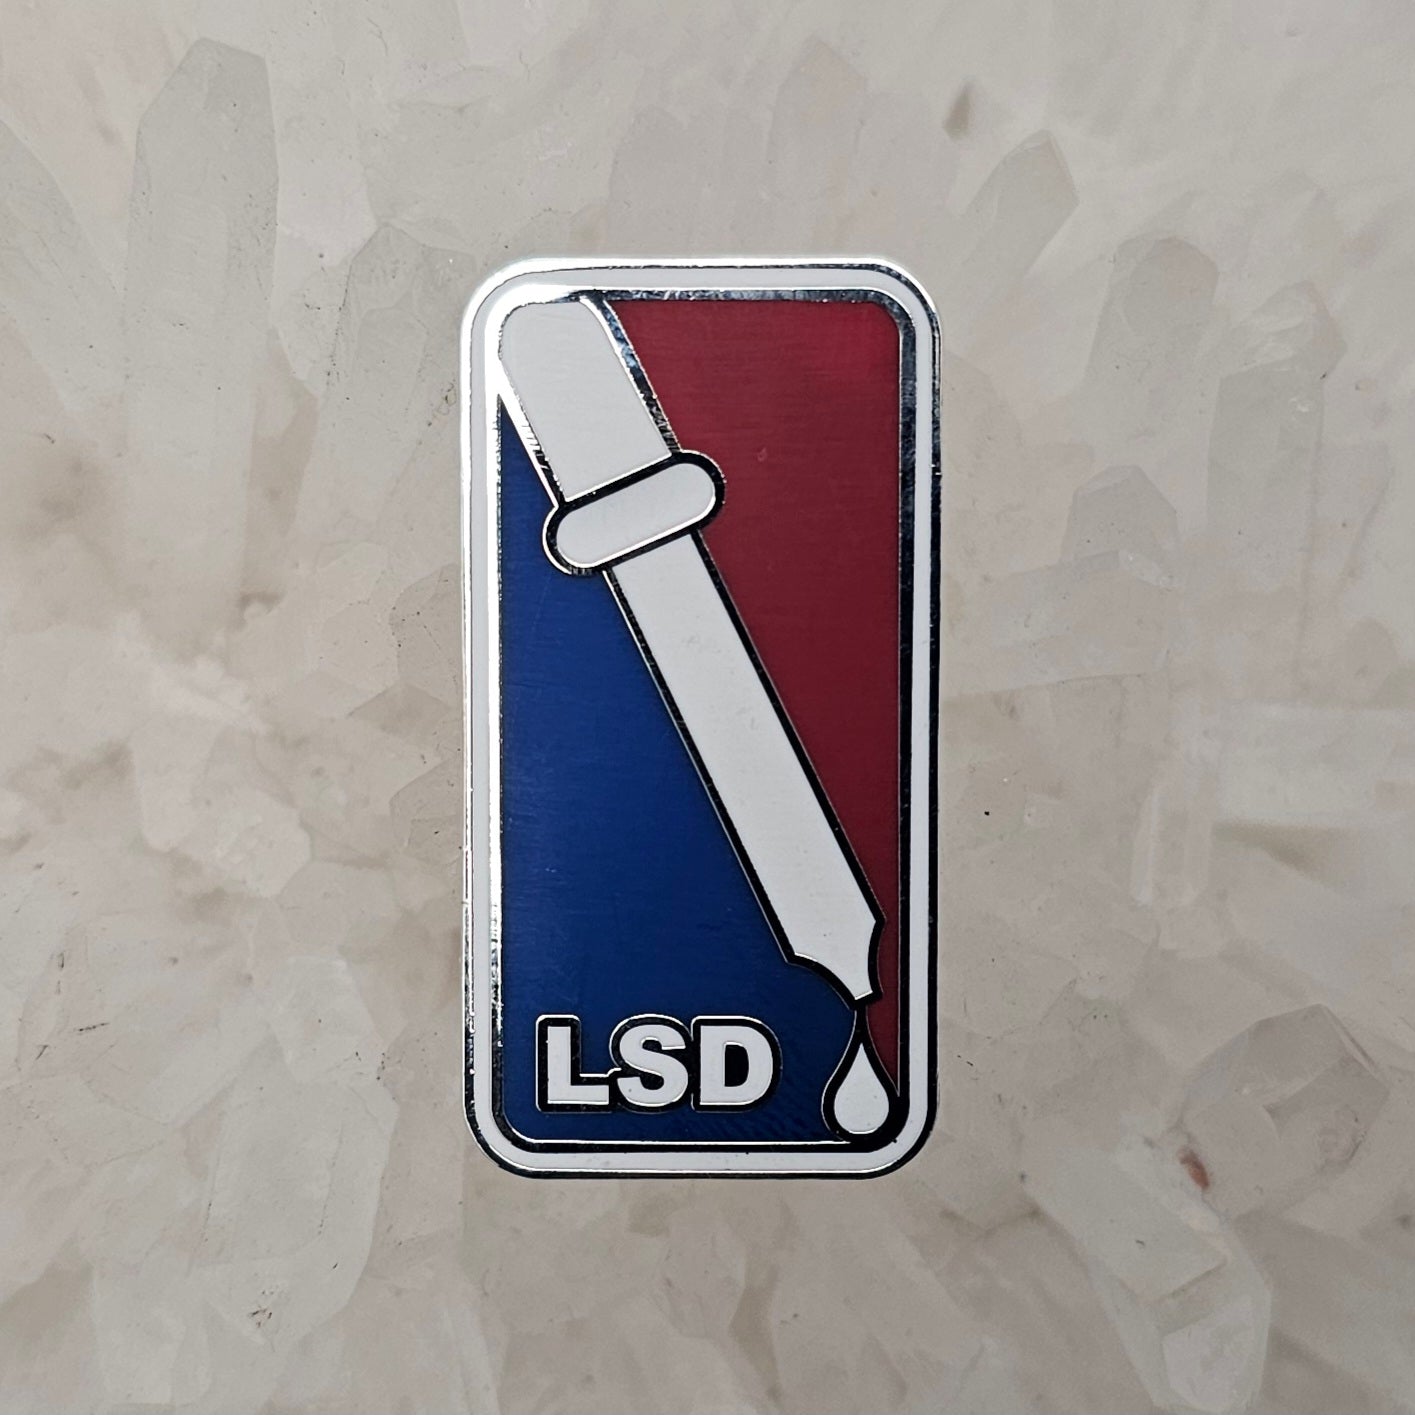 Lsd Acid Basketball Parody Enamel Pins Hat Pins Lapel Pin Brooch Badge Festival Pin